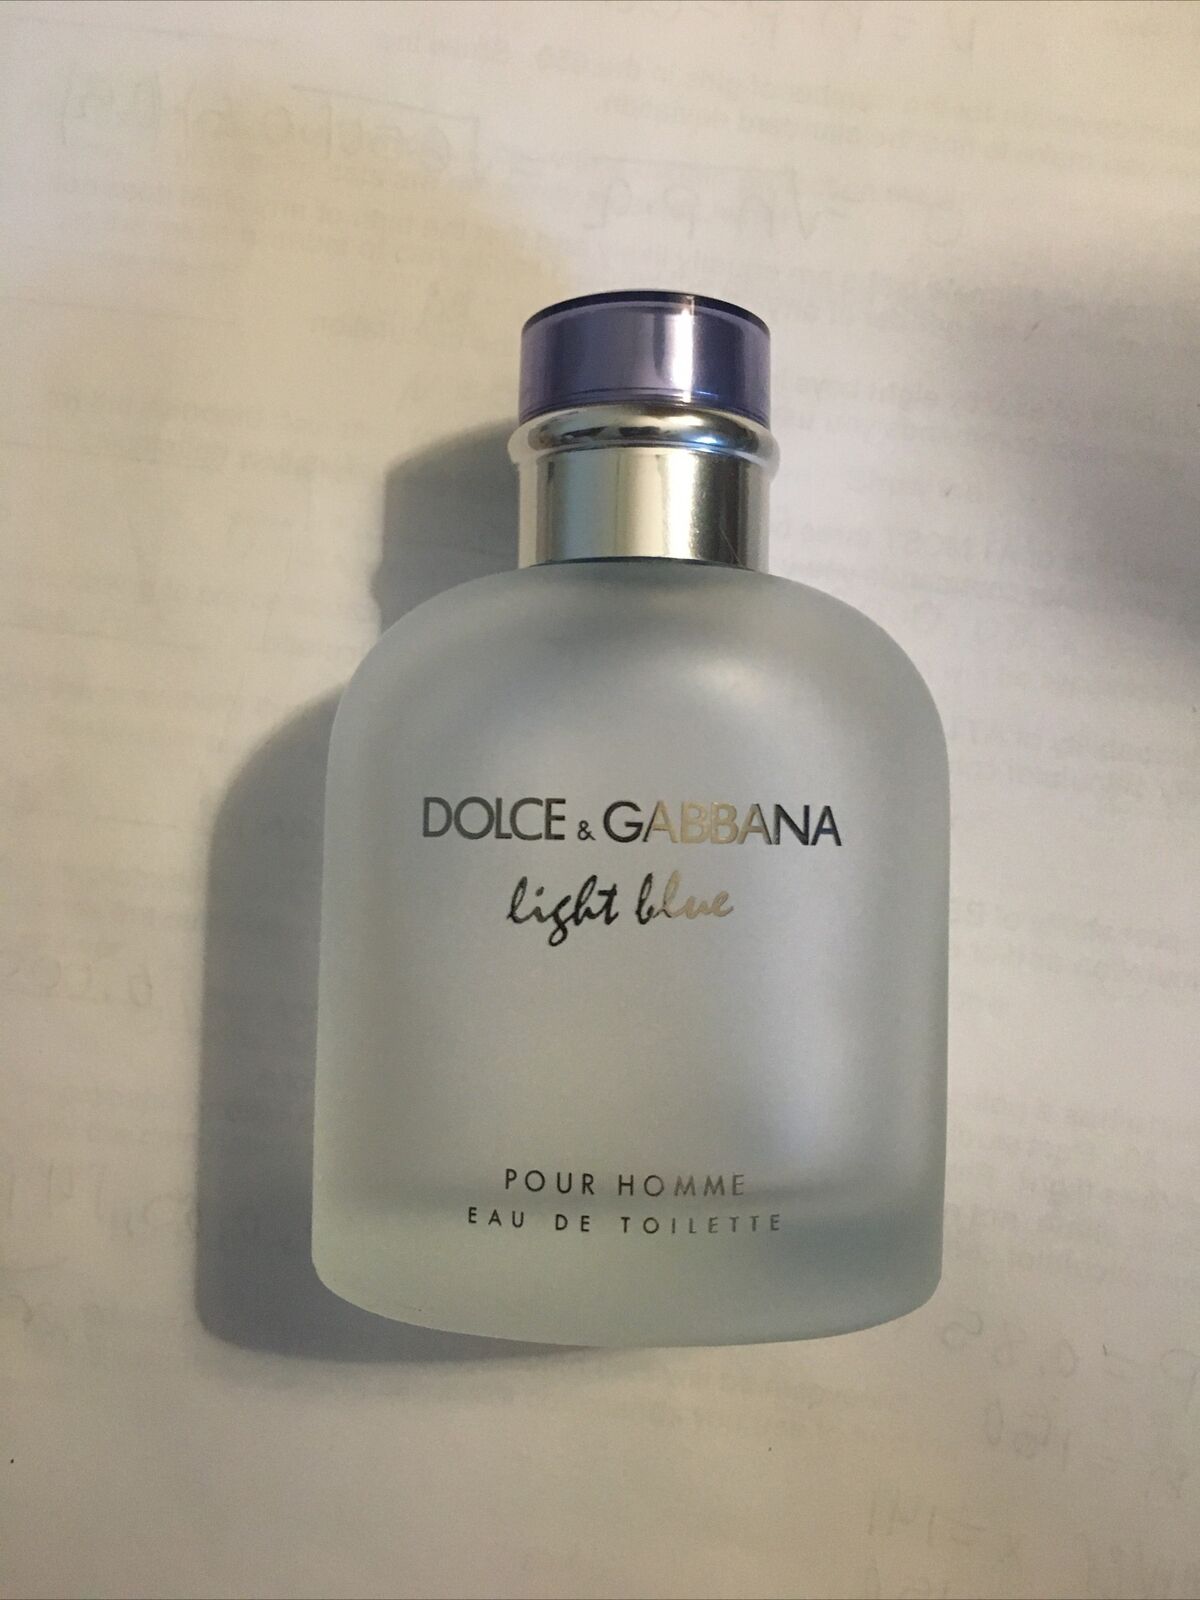 Dolce & Gabbana Light Blue Pour Homme Eau de Toilette Empty Spray Bottle 4.2FL